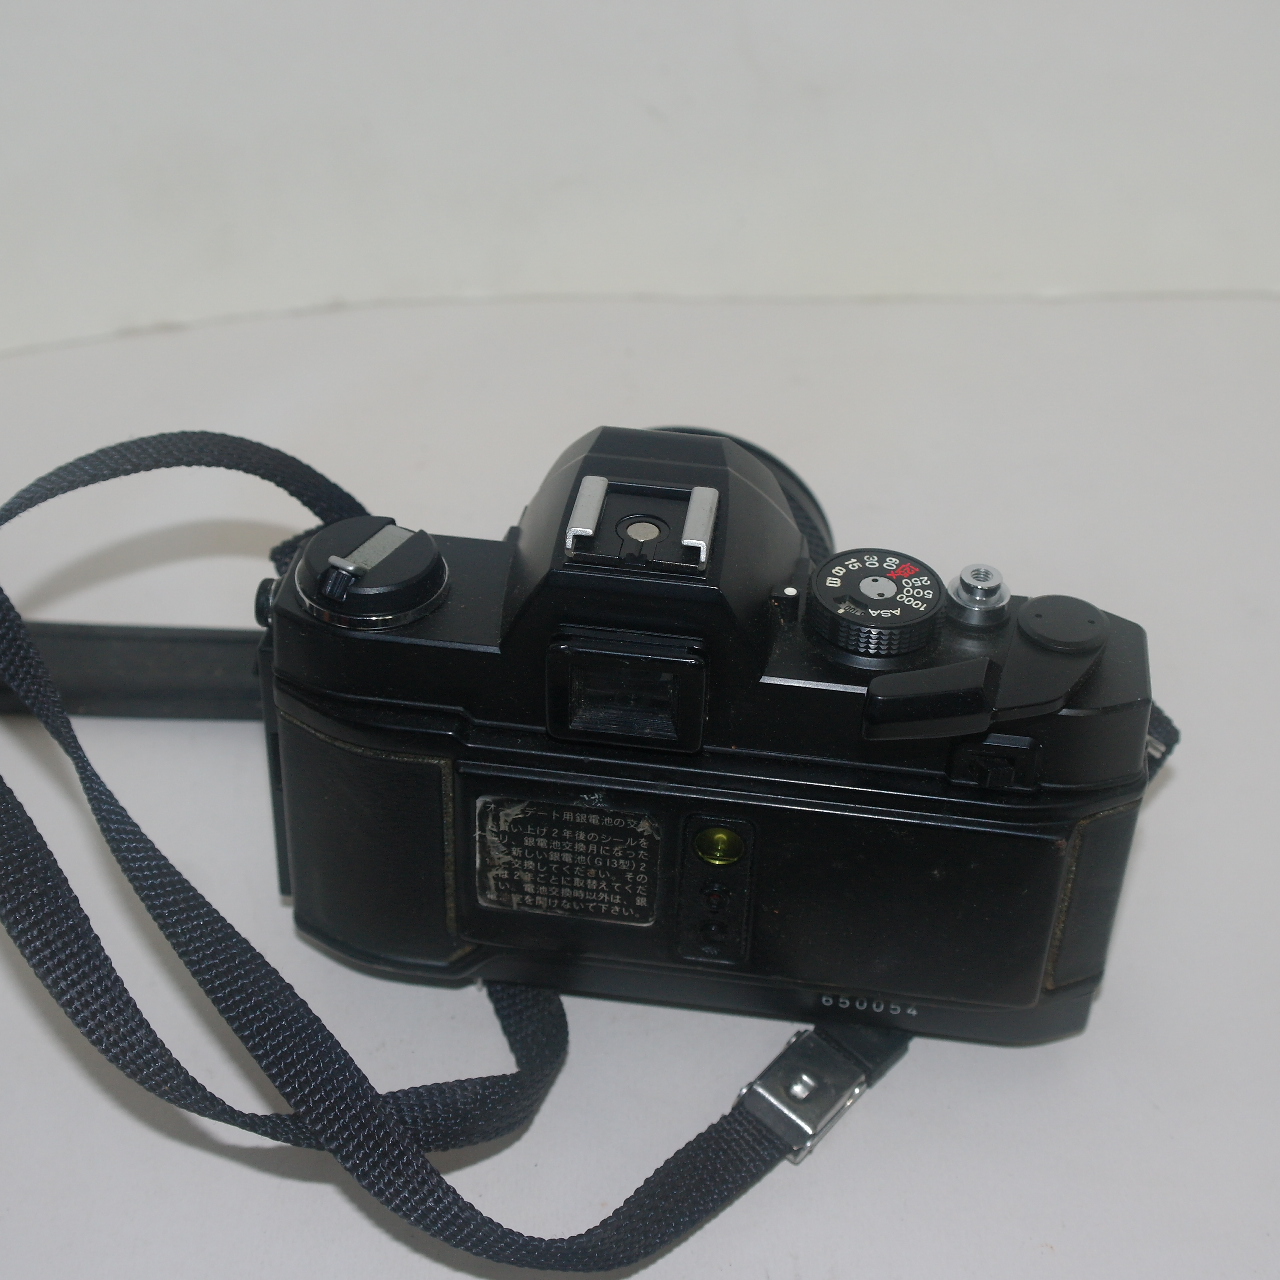 코니카 카메라 Acom-1